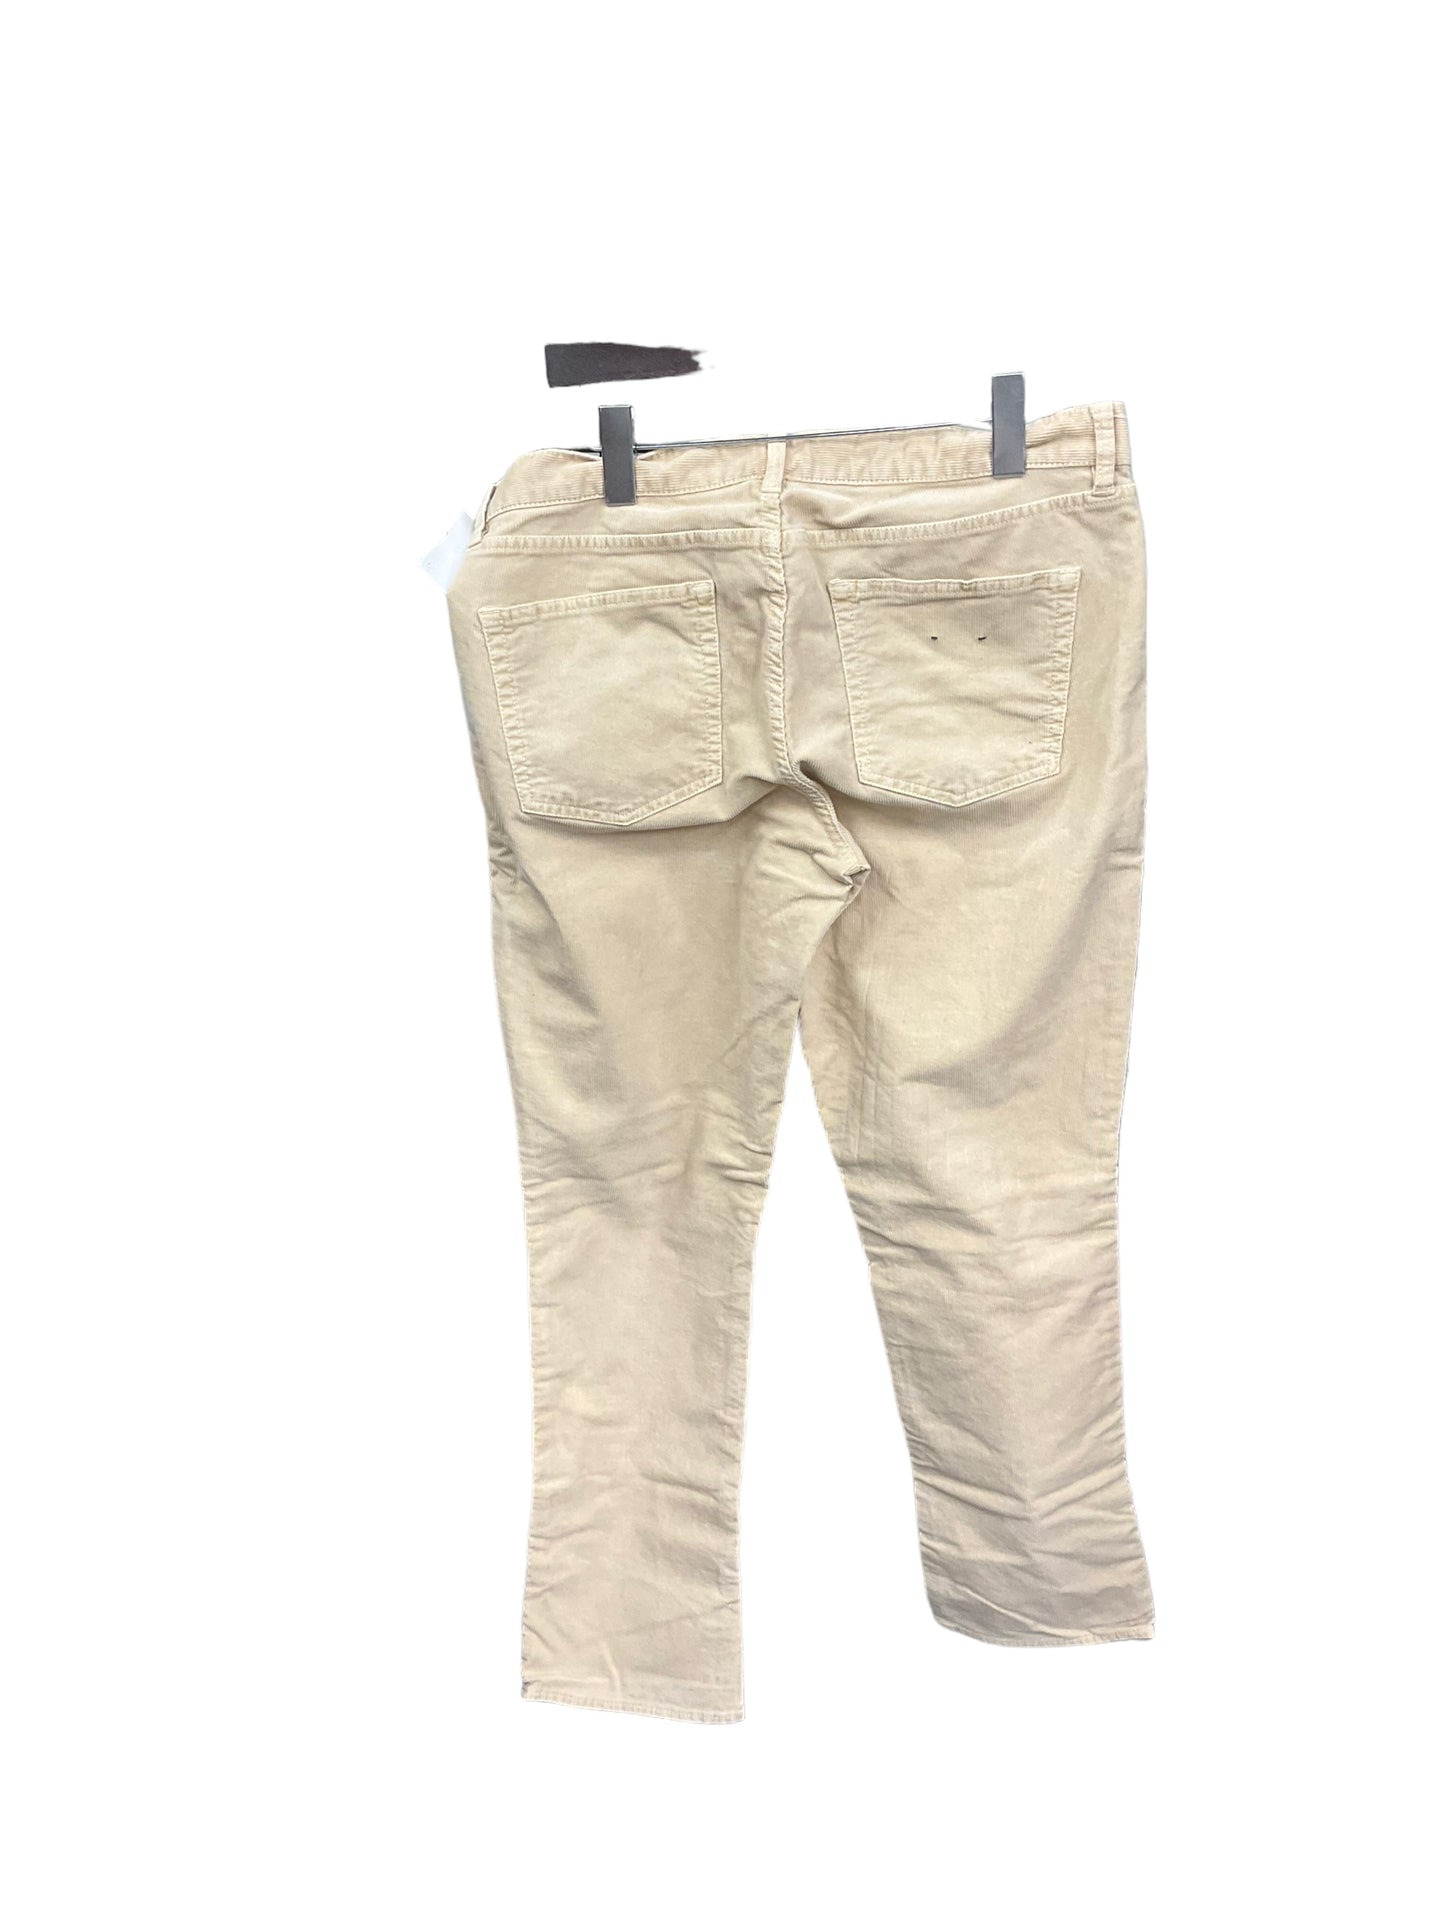 Pants Corduroy By J Crew  Size: 14petite